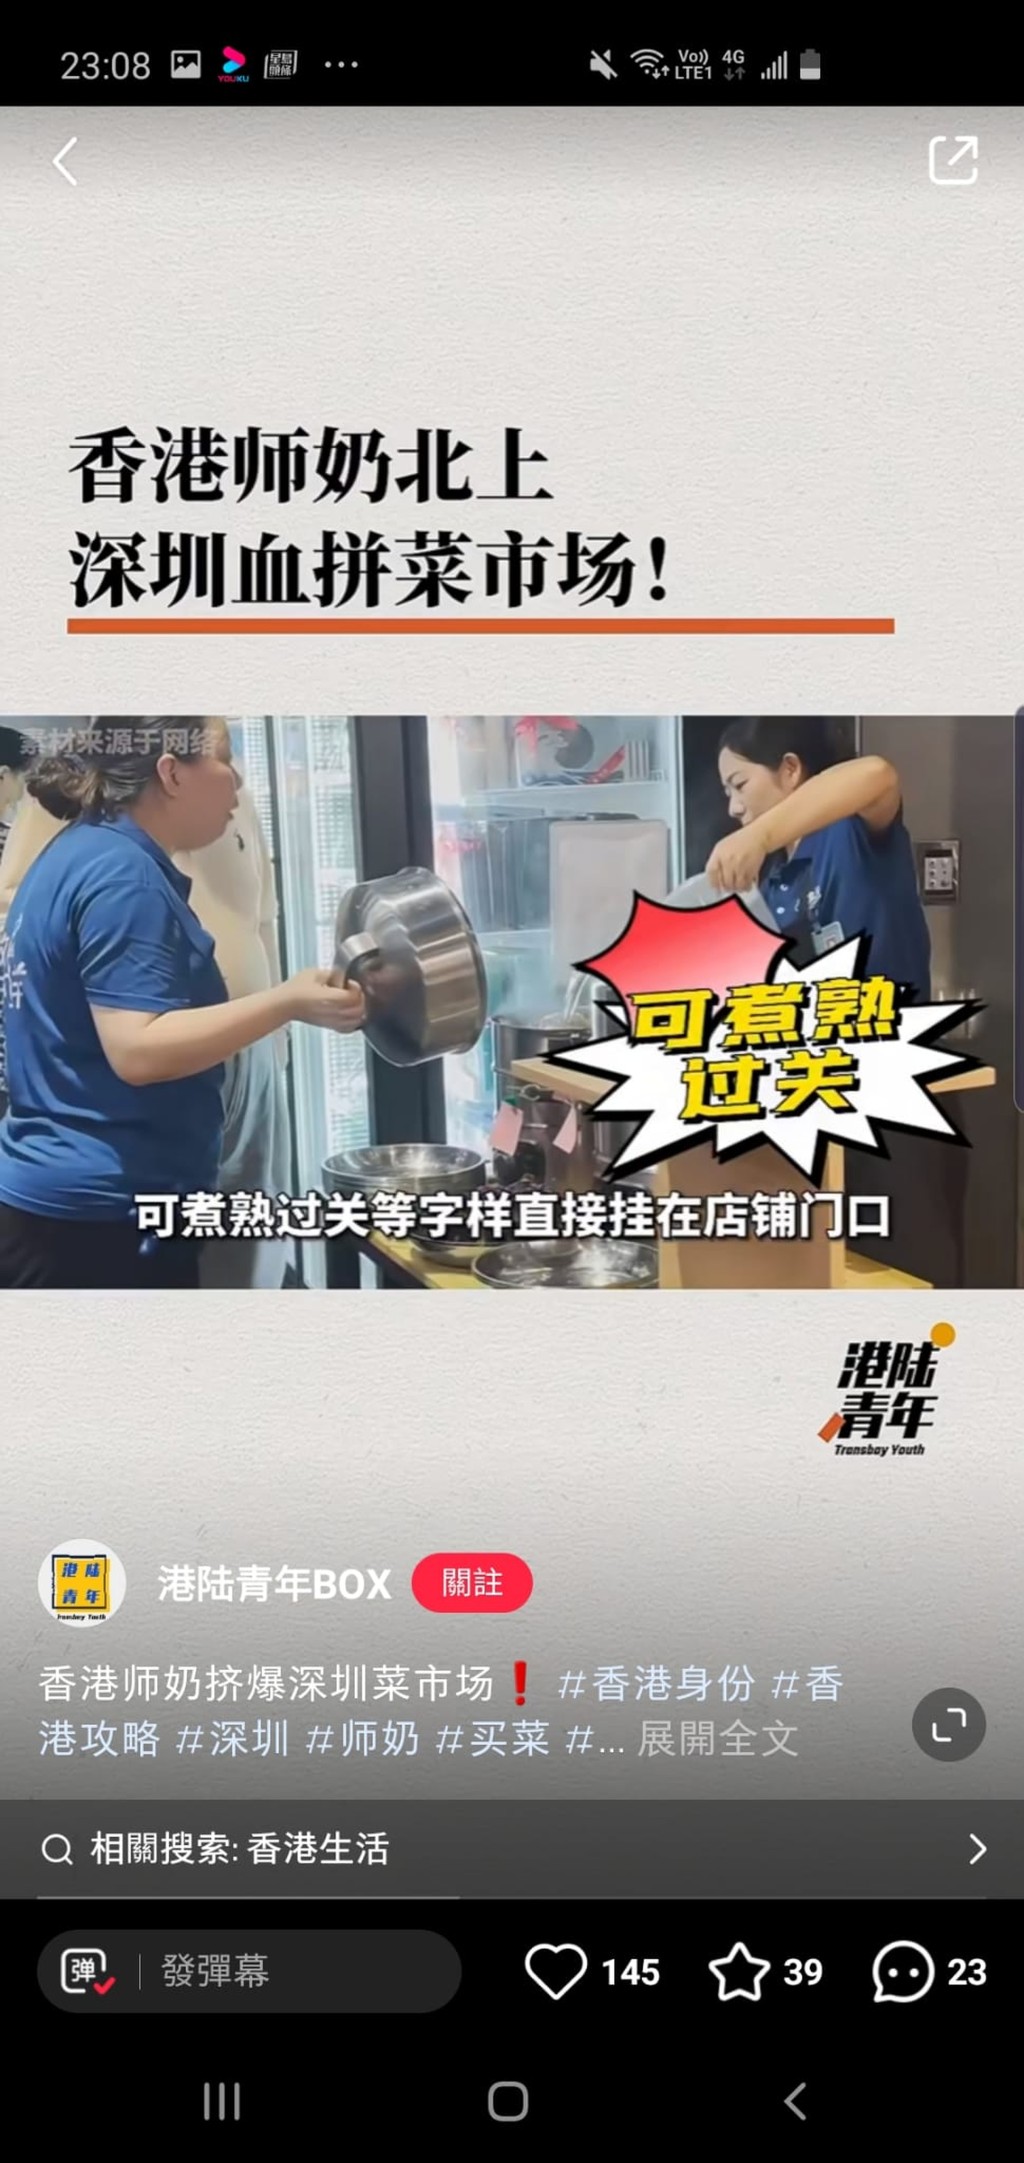 港人北上「扫平货」的热潮成为「小红书」讨论热话，有内地人以「香港师奶北上深圳血拼菜市场」为题，形容港人北上购买廉价货日益疯狂。网上图片